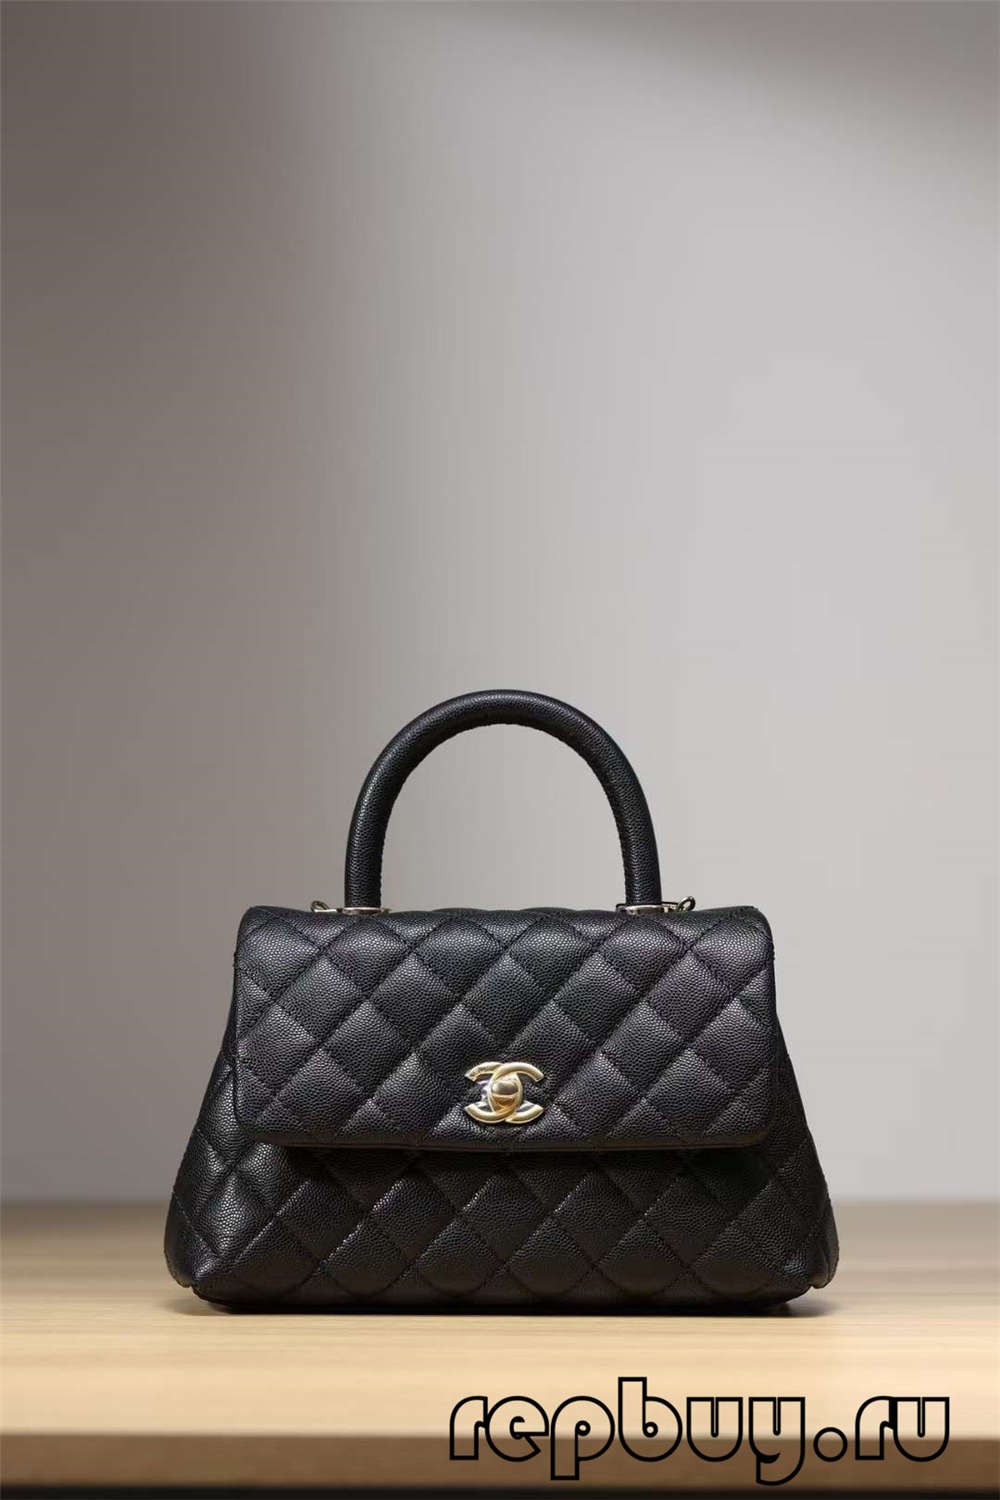 Chanel Coco Handle Top Replica Bolso Black Gold Buckle Look (2022 actualizado) - Mejor calidad Fake Louis Vuitton Bag Tienda en línea, Replica designer bag ru